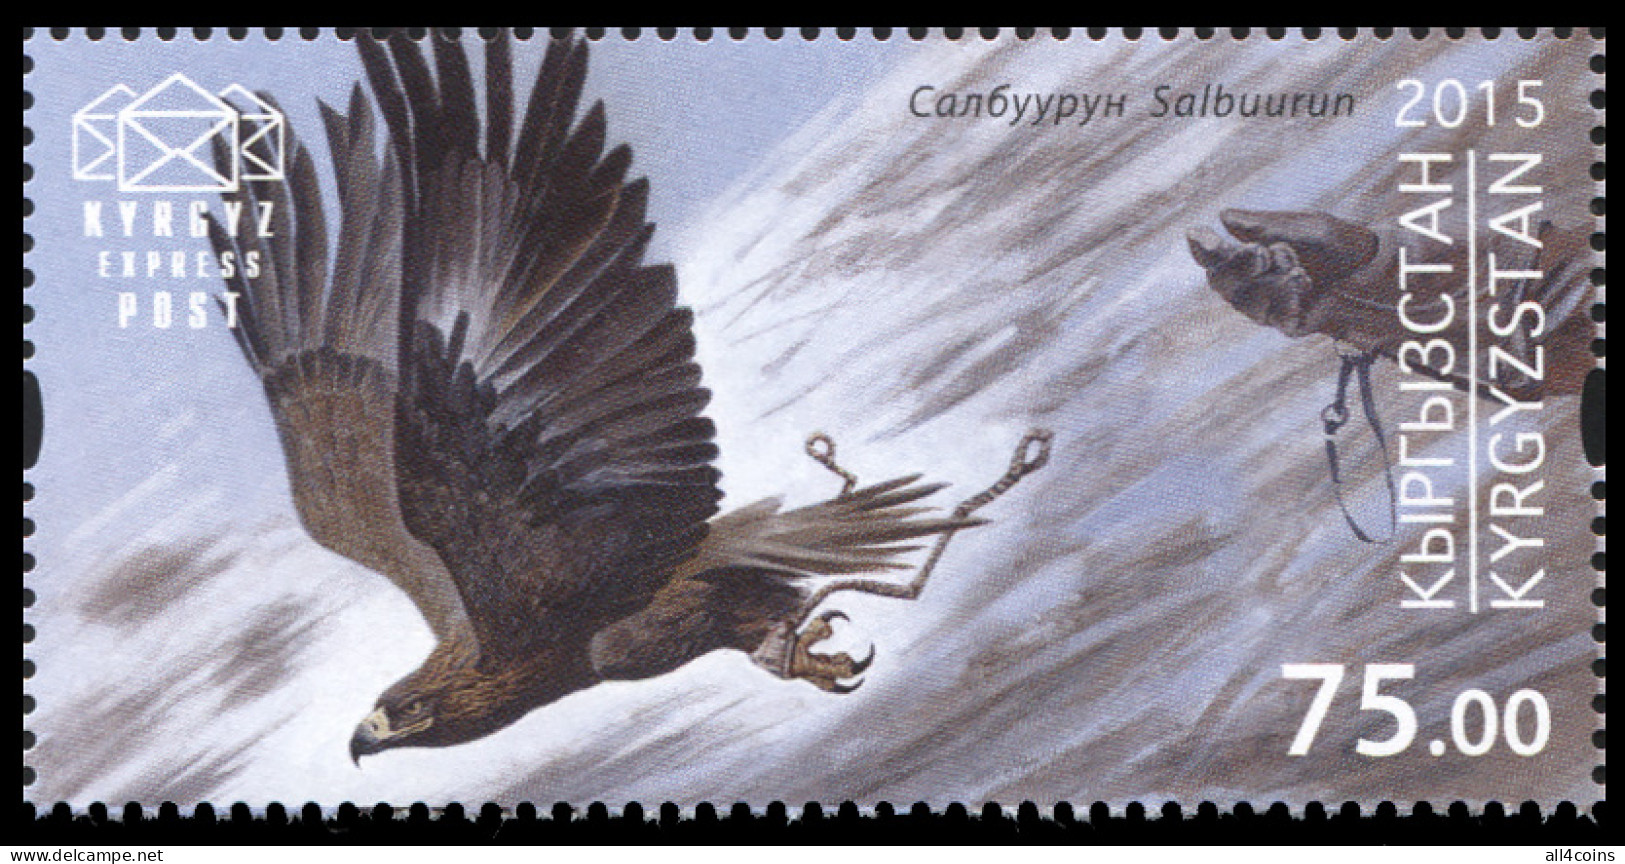 Kyrgyzstan 2015. Salburuun. Soaring Falcon (MNH OG) Stamp - Kyrgyzstan